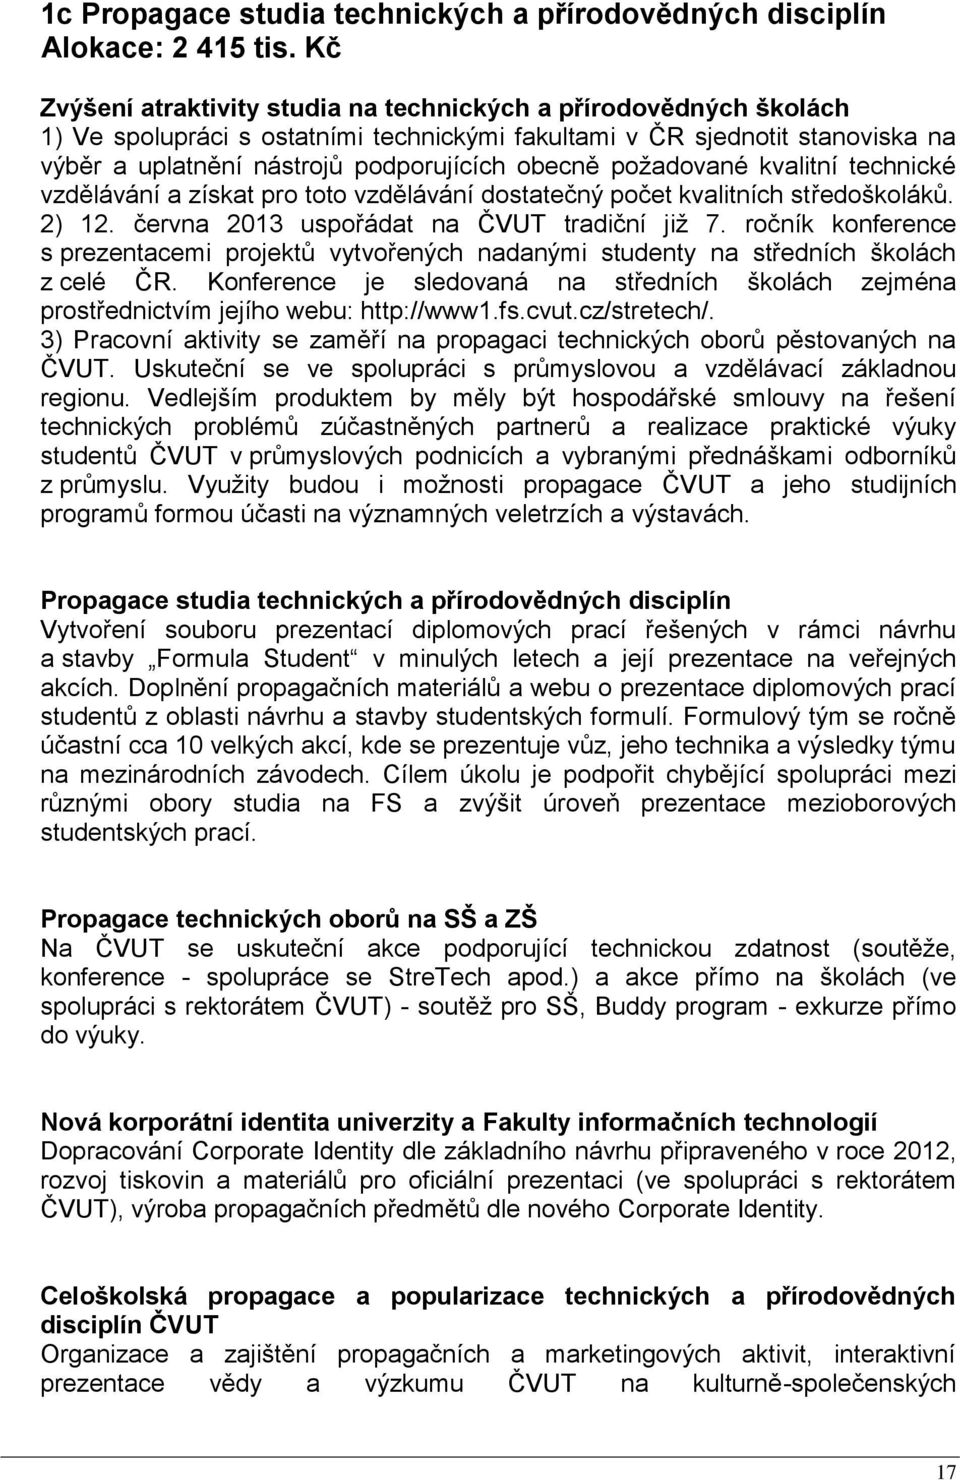 požadované kvalitní technické vzdělávání a získat pro toto vzdělávání dostatečný počet kvalitních středoškoláků. 2) 12. června 2013 uspořádat na ČVUT tradiční již 7.